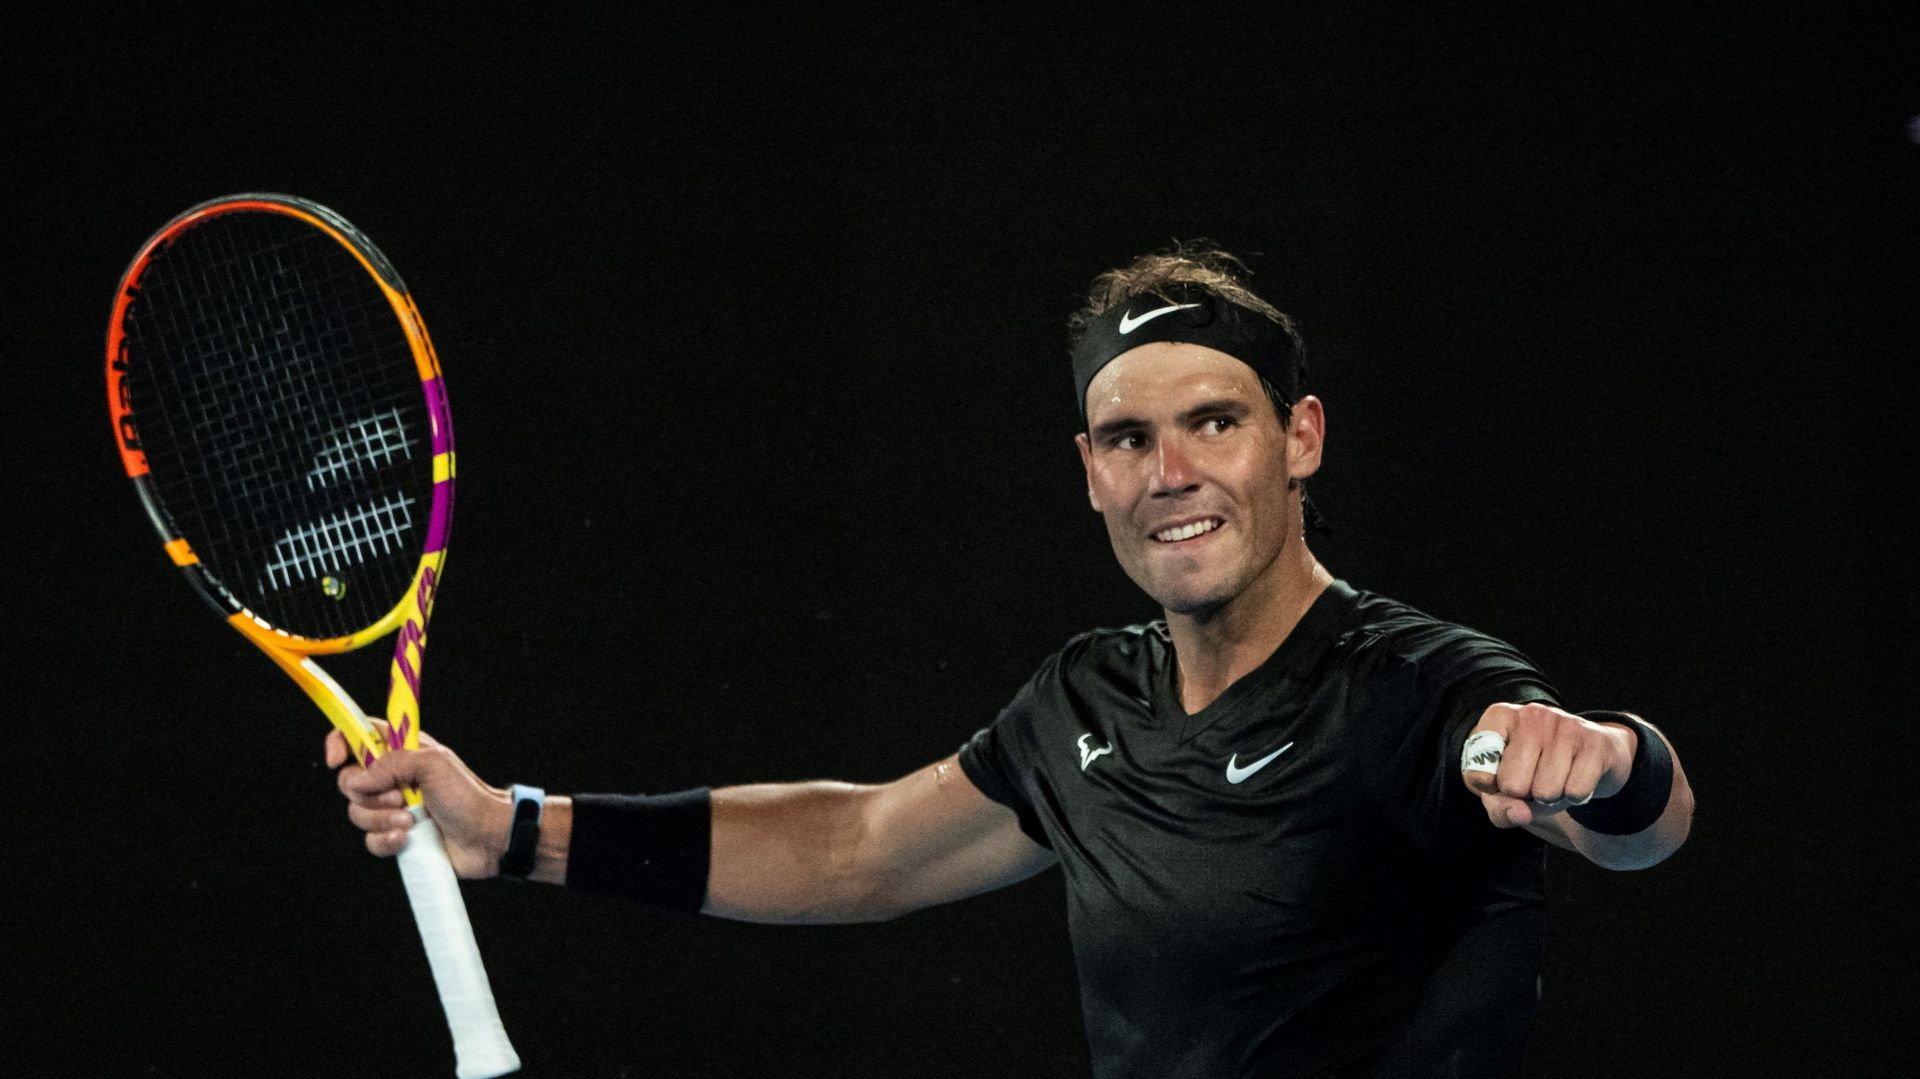 Pour son retour après cinq mois sans compétition et à huit jours du lancement de l’Open d’Australie, Rafael Nadal s’est qualifié samedi pour la finale du tournoi ATP 250 de Melbourne, où il affrontera le nouveau venu Maxime Cressy.